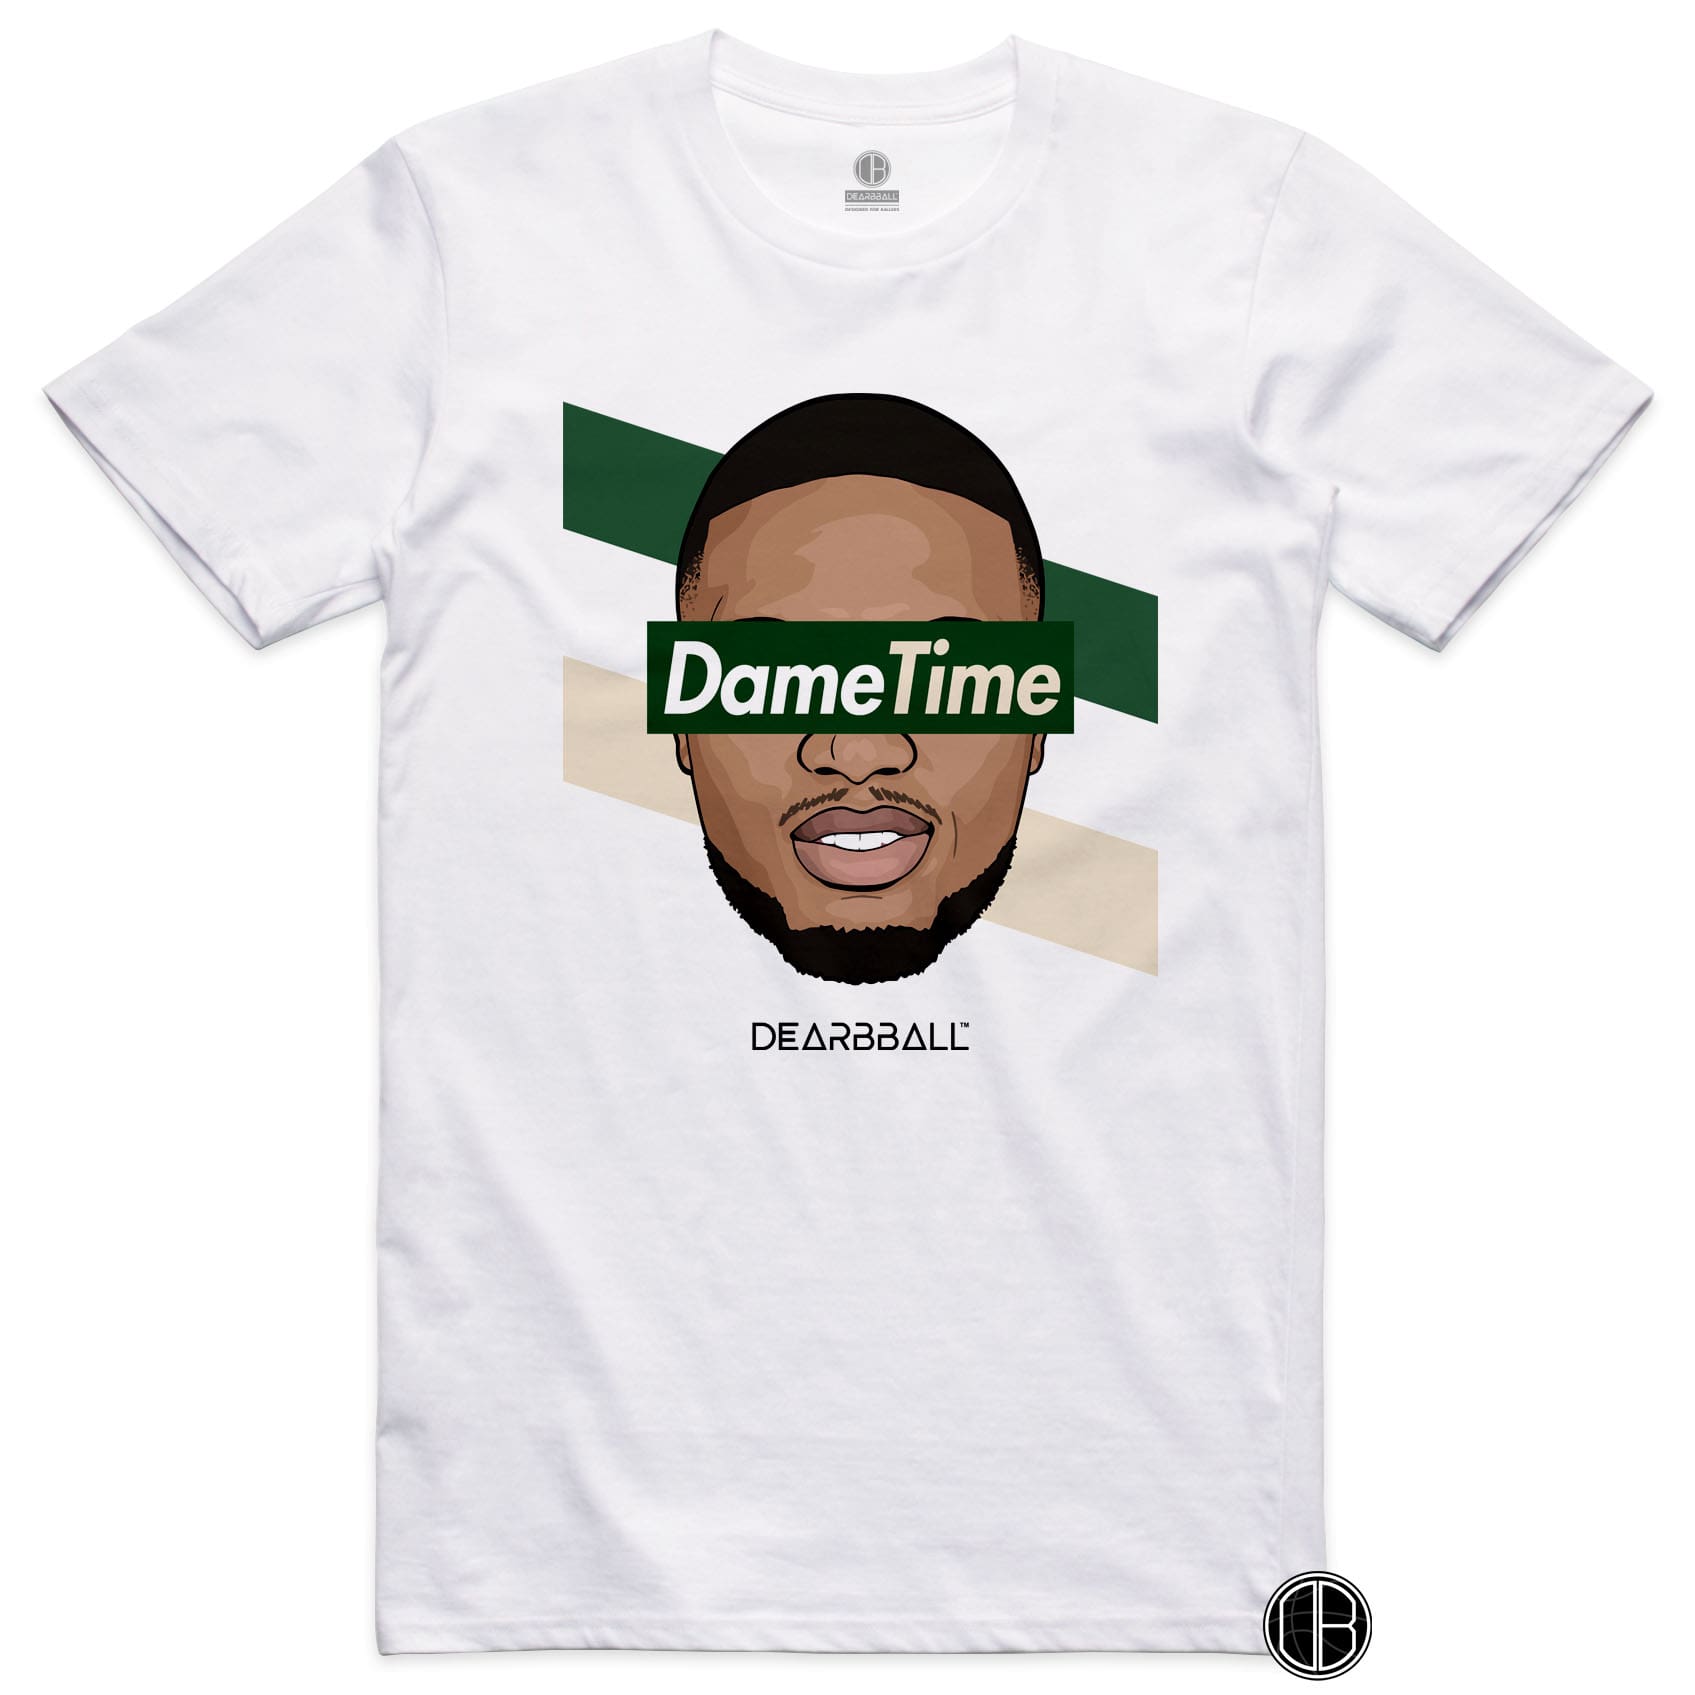 DearBBall T-Shirt - DameTime Stripes Cream Edition